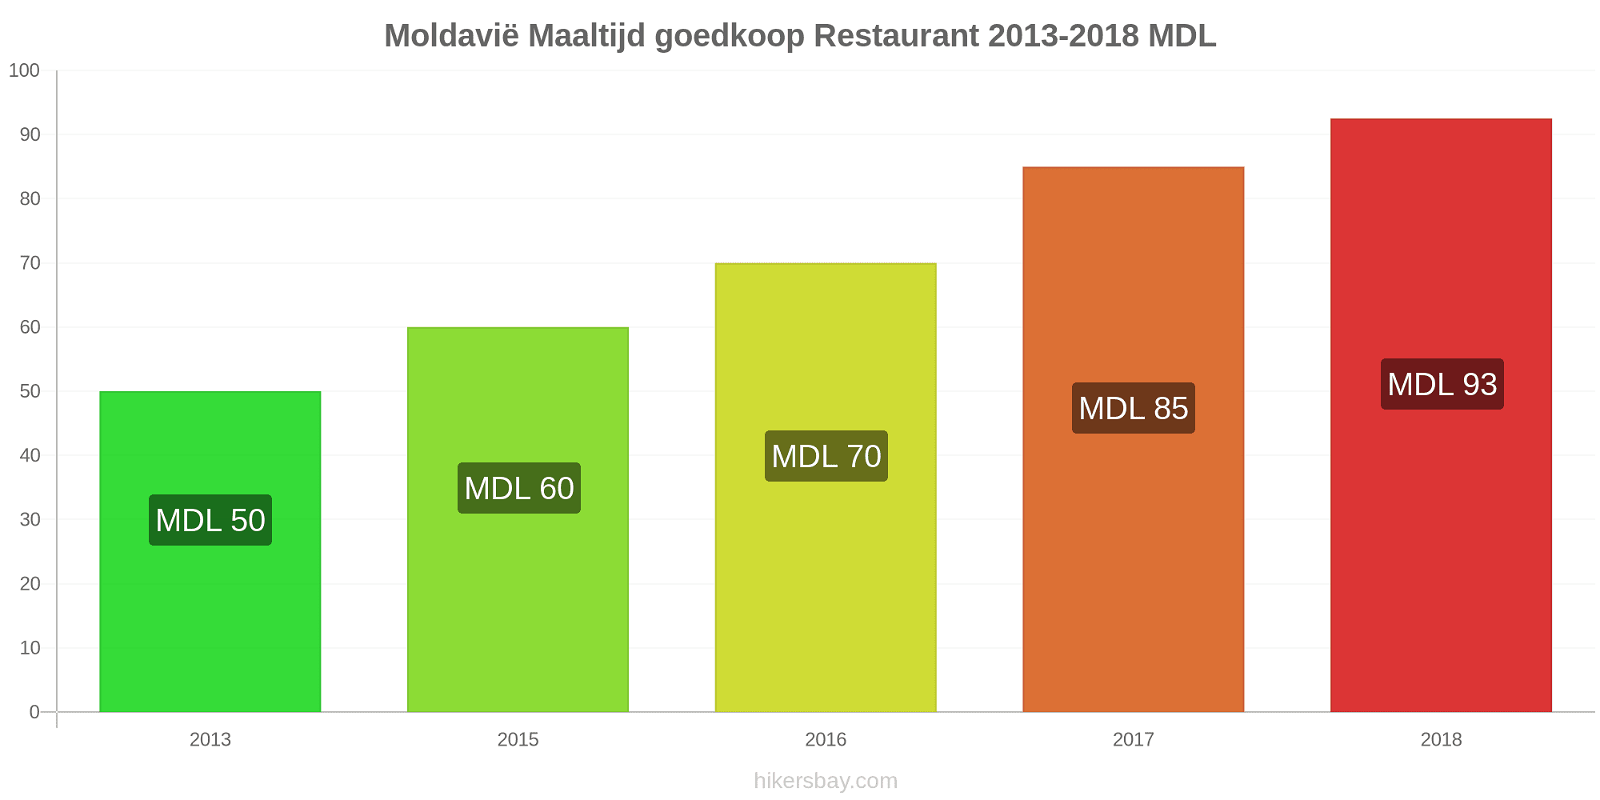 Moldavië prijswijzigingen Maaltijd in een goedkoop restaurant hikersbay.com